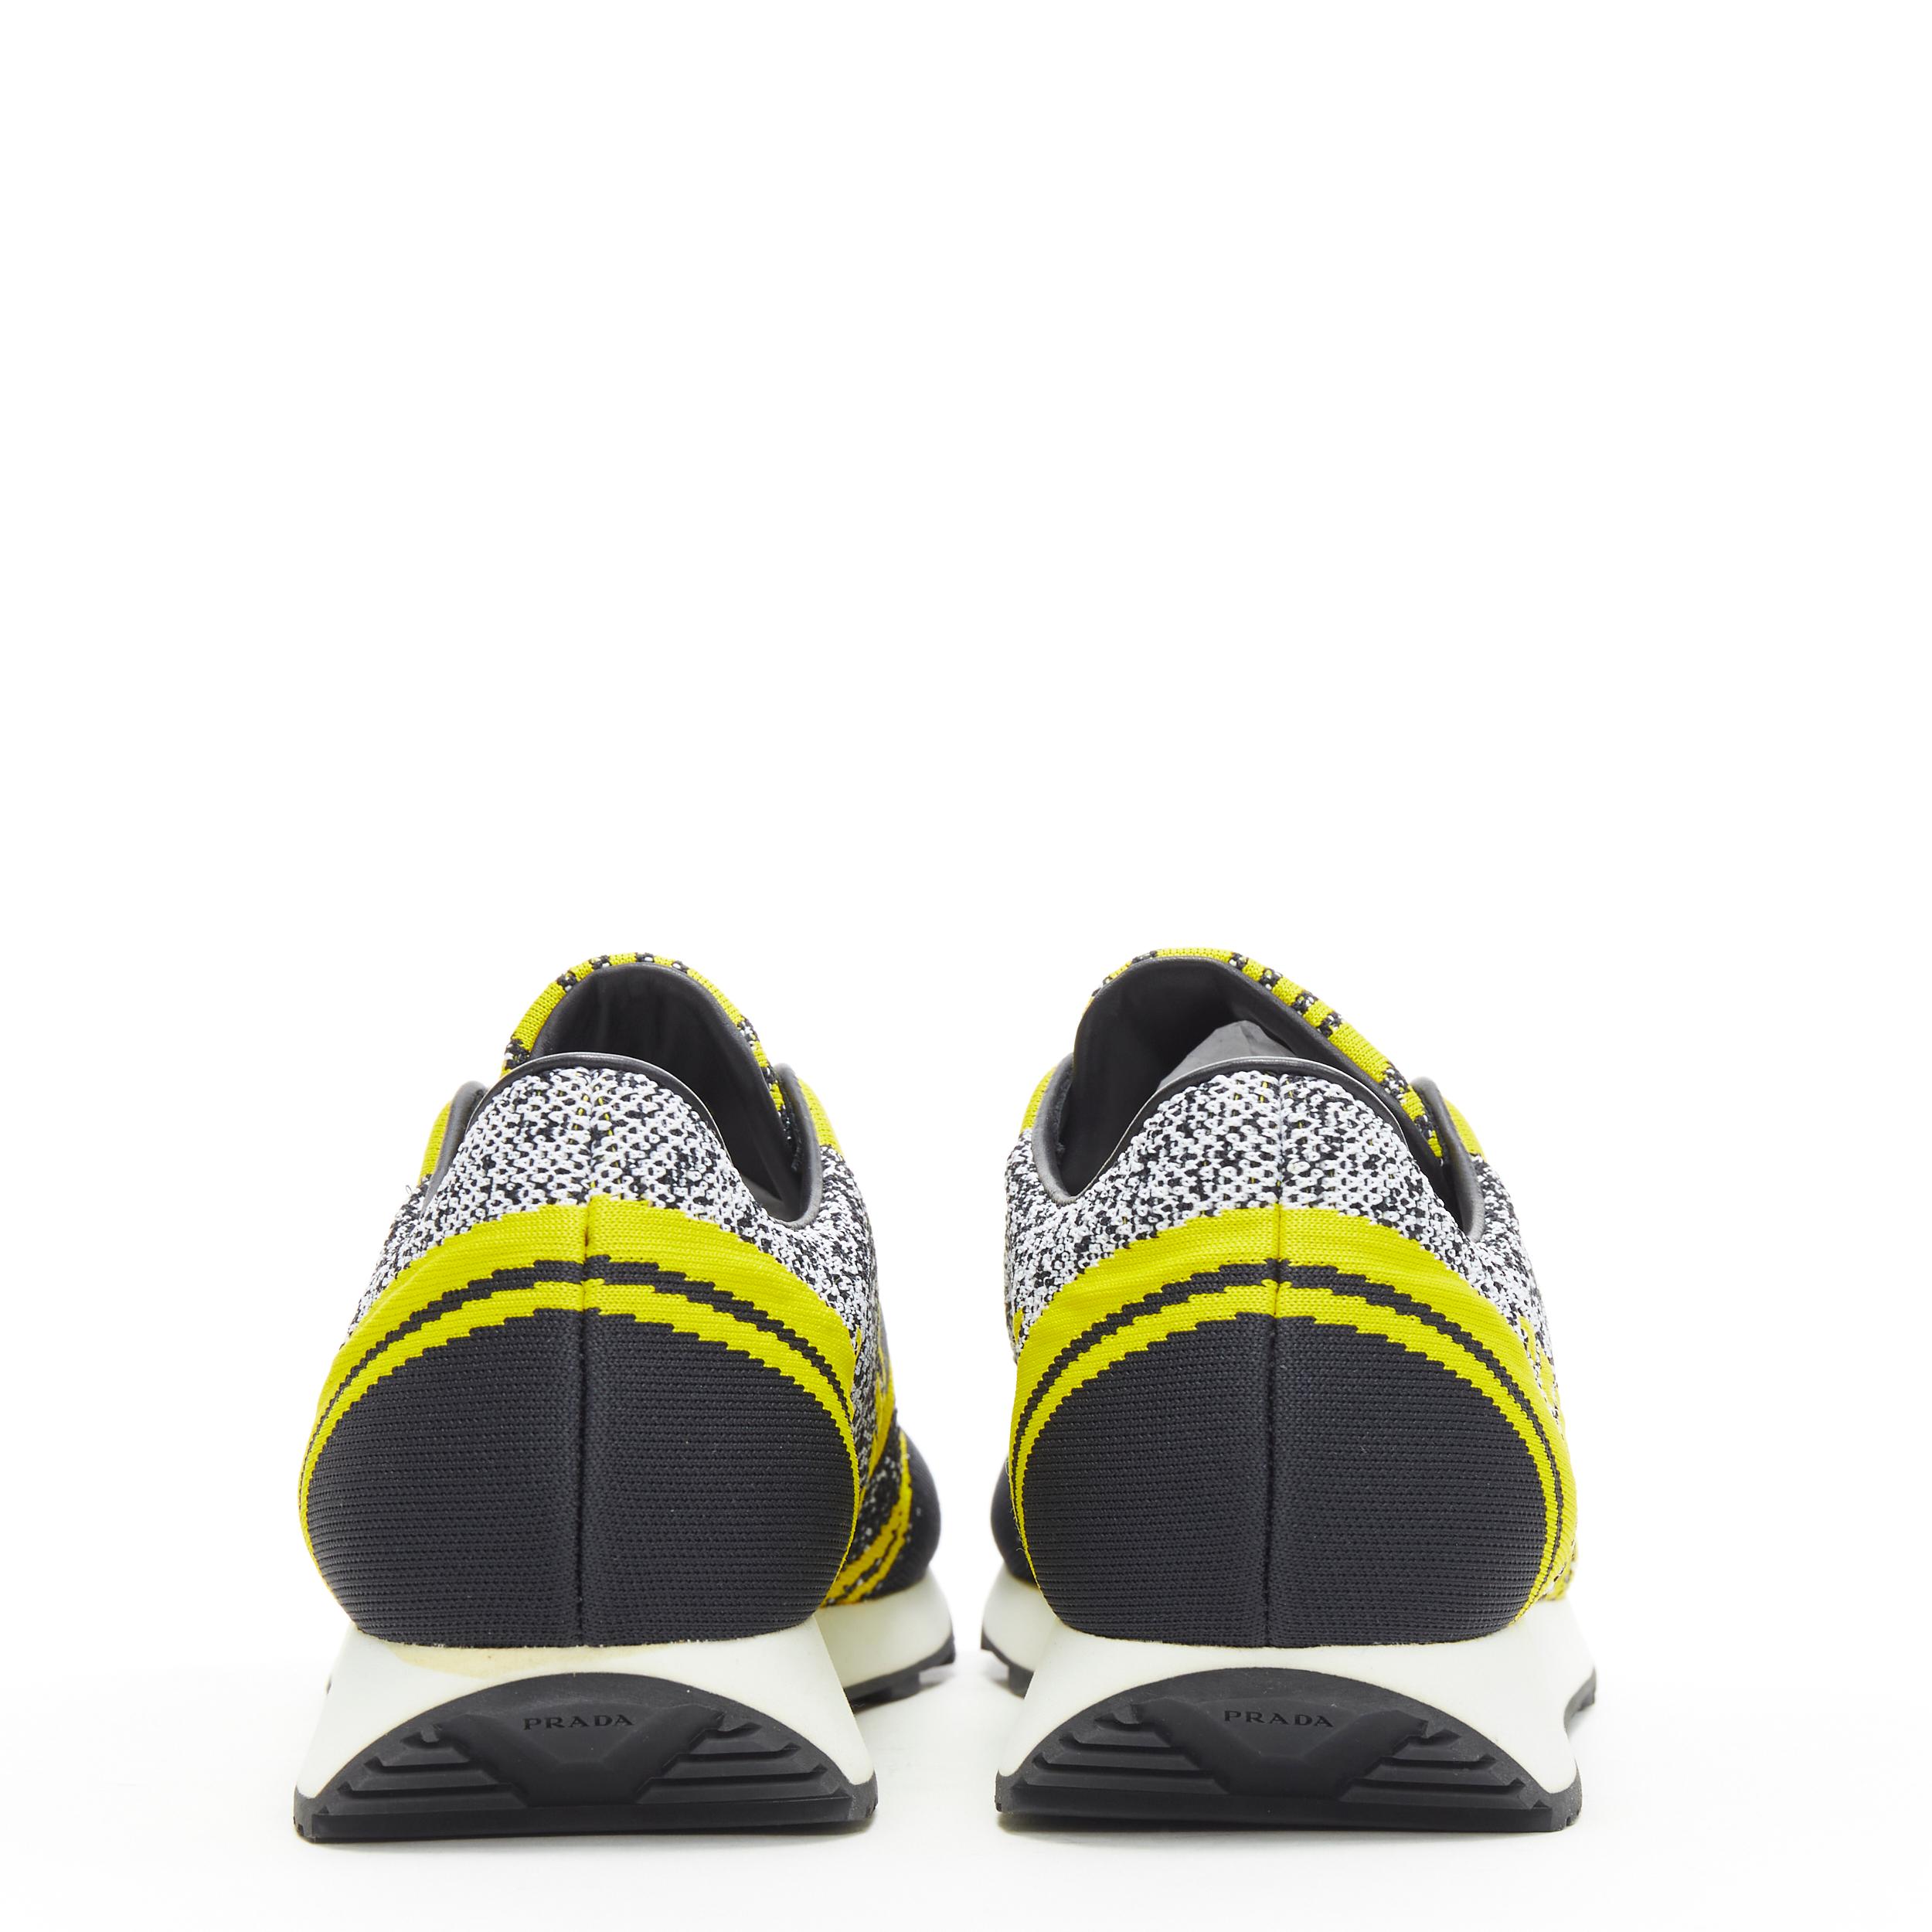 prada black and yellow sneakers